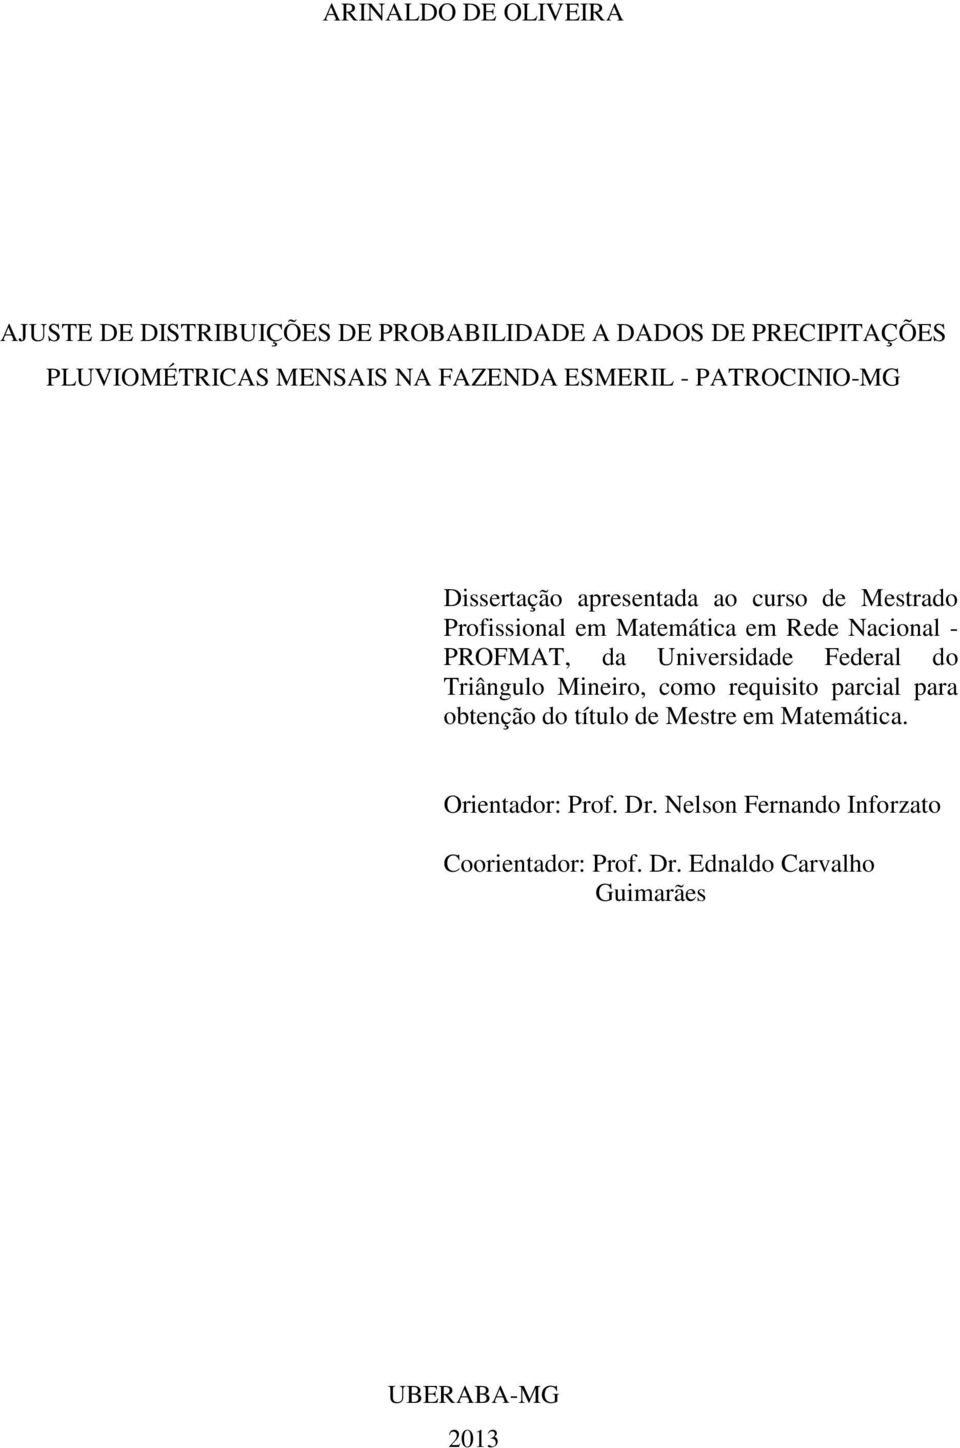 Nacional - PROFMAT, da Universidade Federal do Triângulo Mineiro, como requisito parcial para obtenção do título de